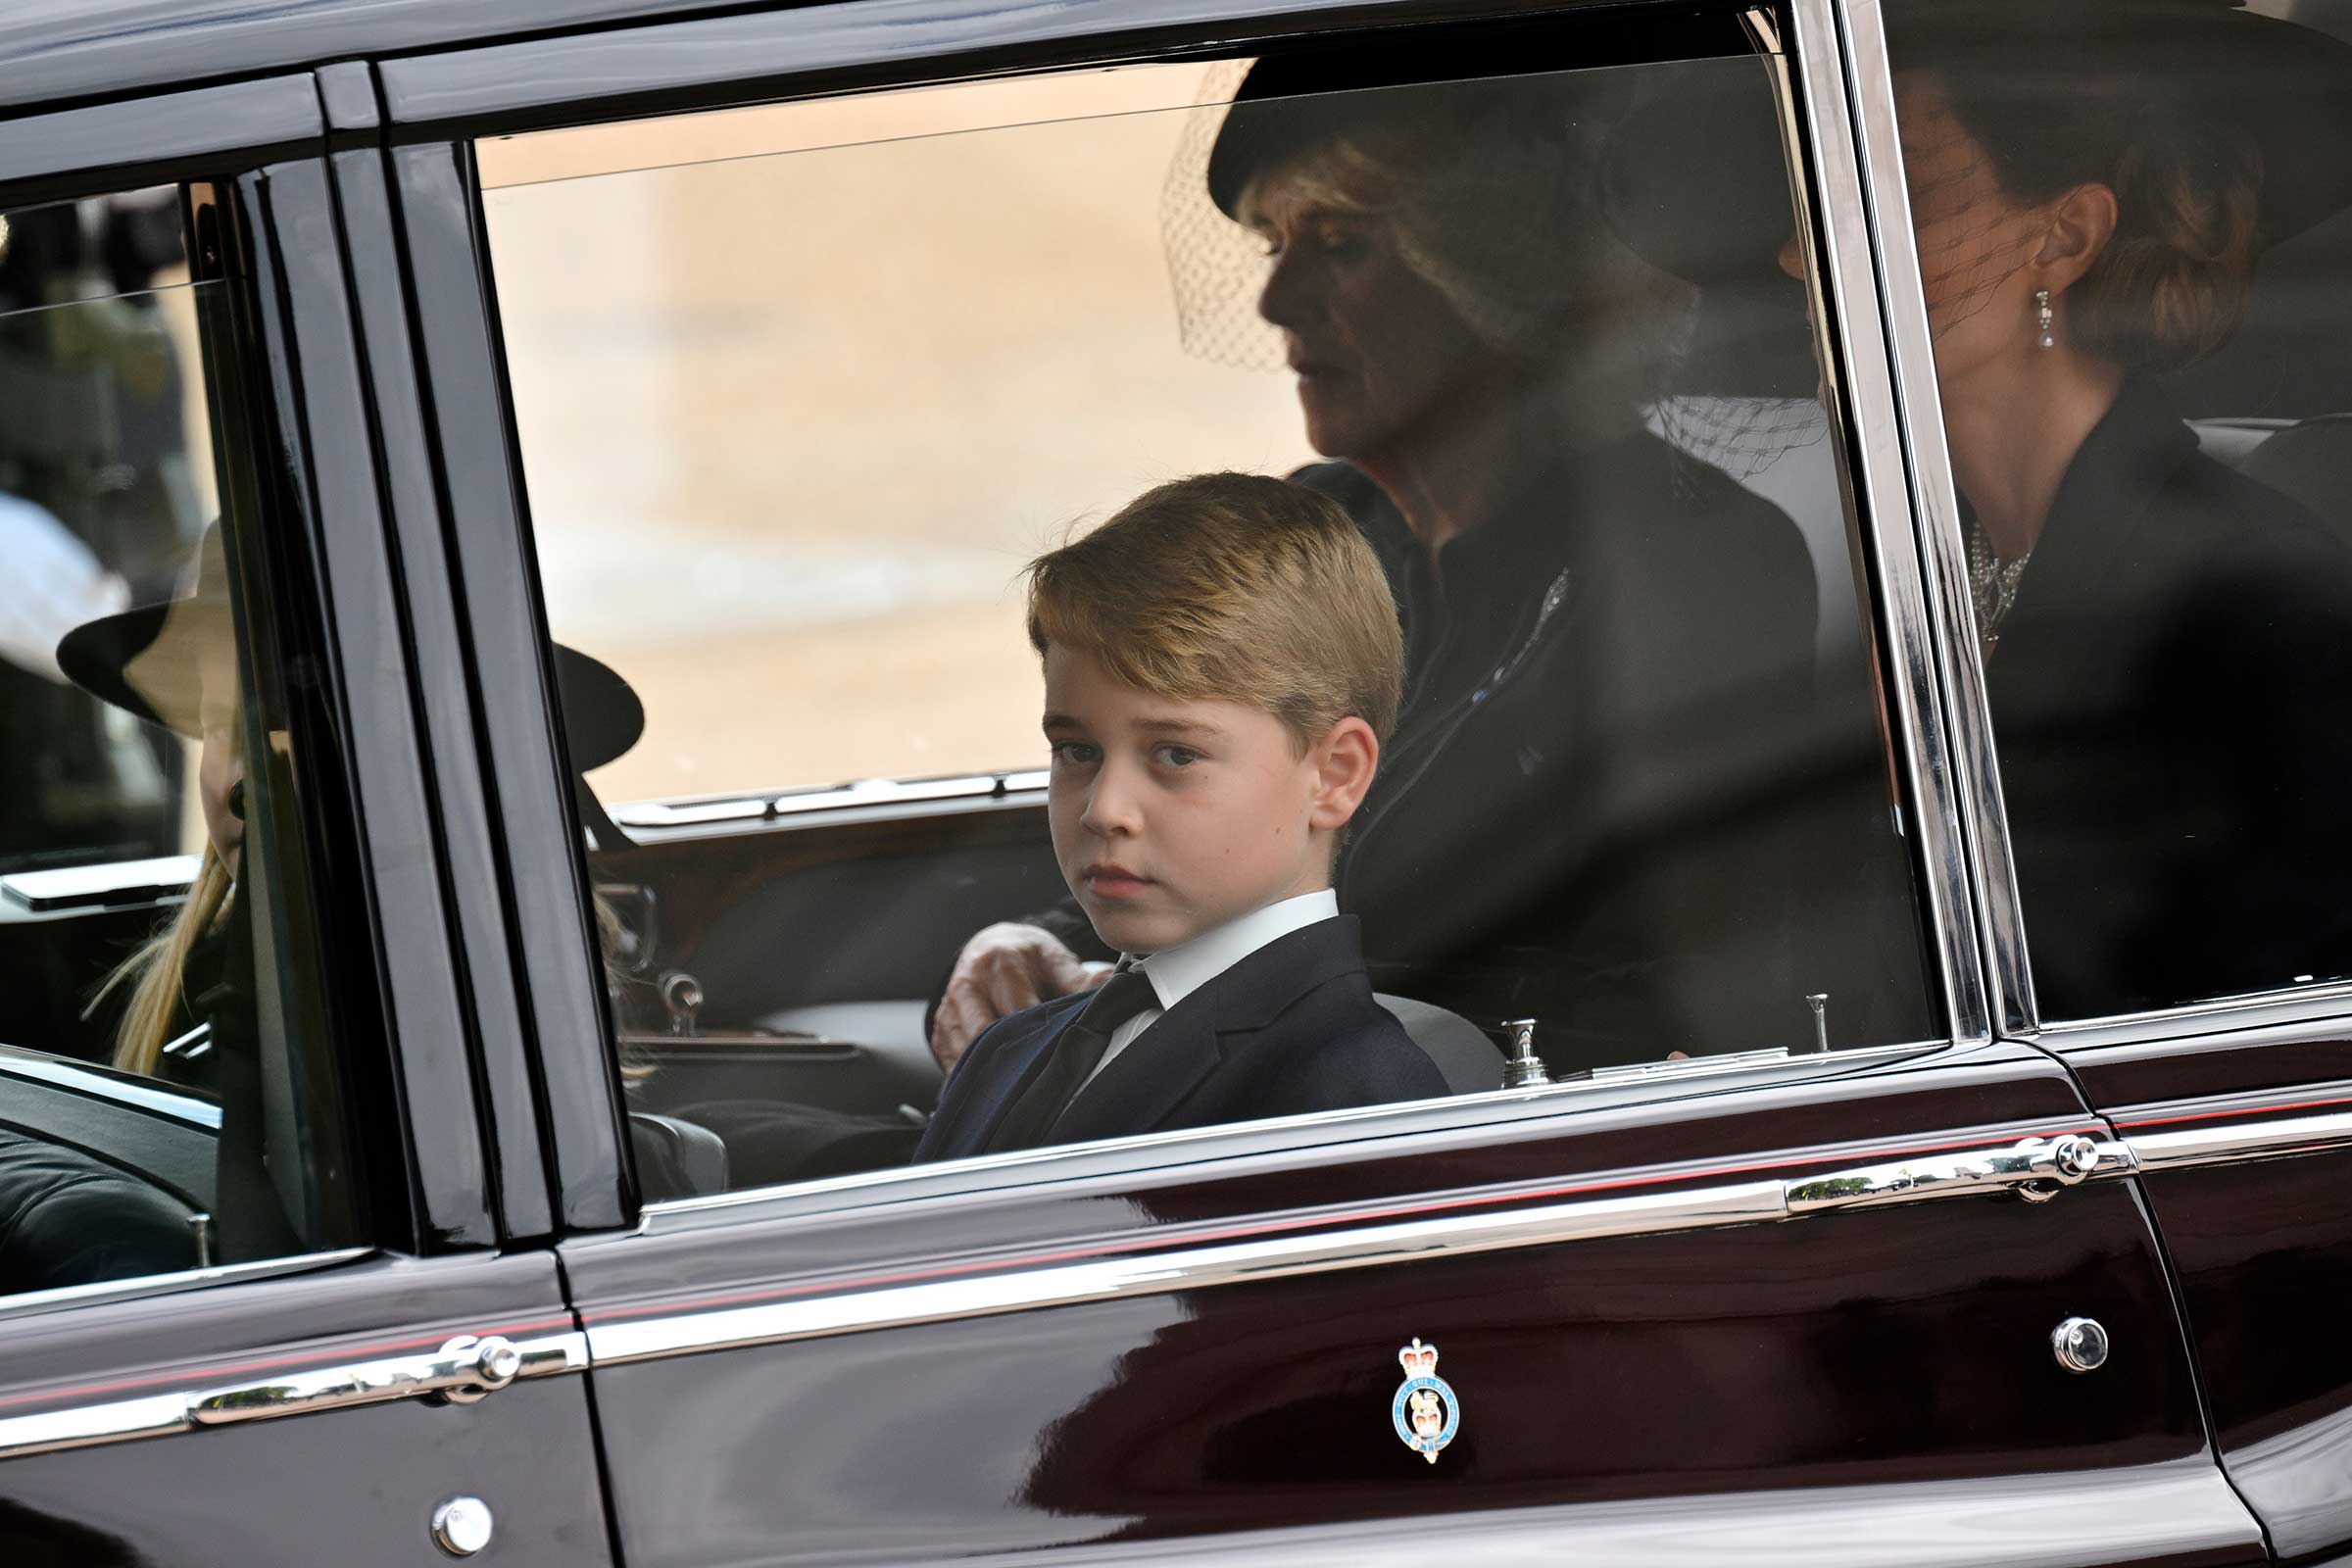 Galler Prensi George, İngiltere Kraliçesi II. Elizabeth'in 19 Eylül 2022 Pazartesi günü Londra'da düzenlenen Devlet Cenaze Töreni sırasında Westminster Abbey'den Wellington Arch'a giderken Kraliçe II. Elizabeth'in tabutunu arabayla takip ediyor.  (Loic Venance—Havuz Fotoğrafı/AP)